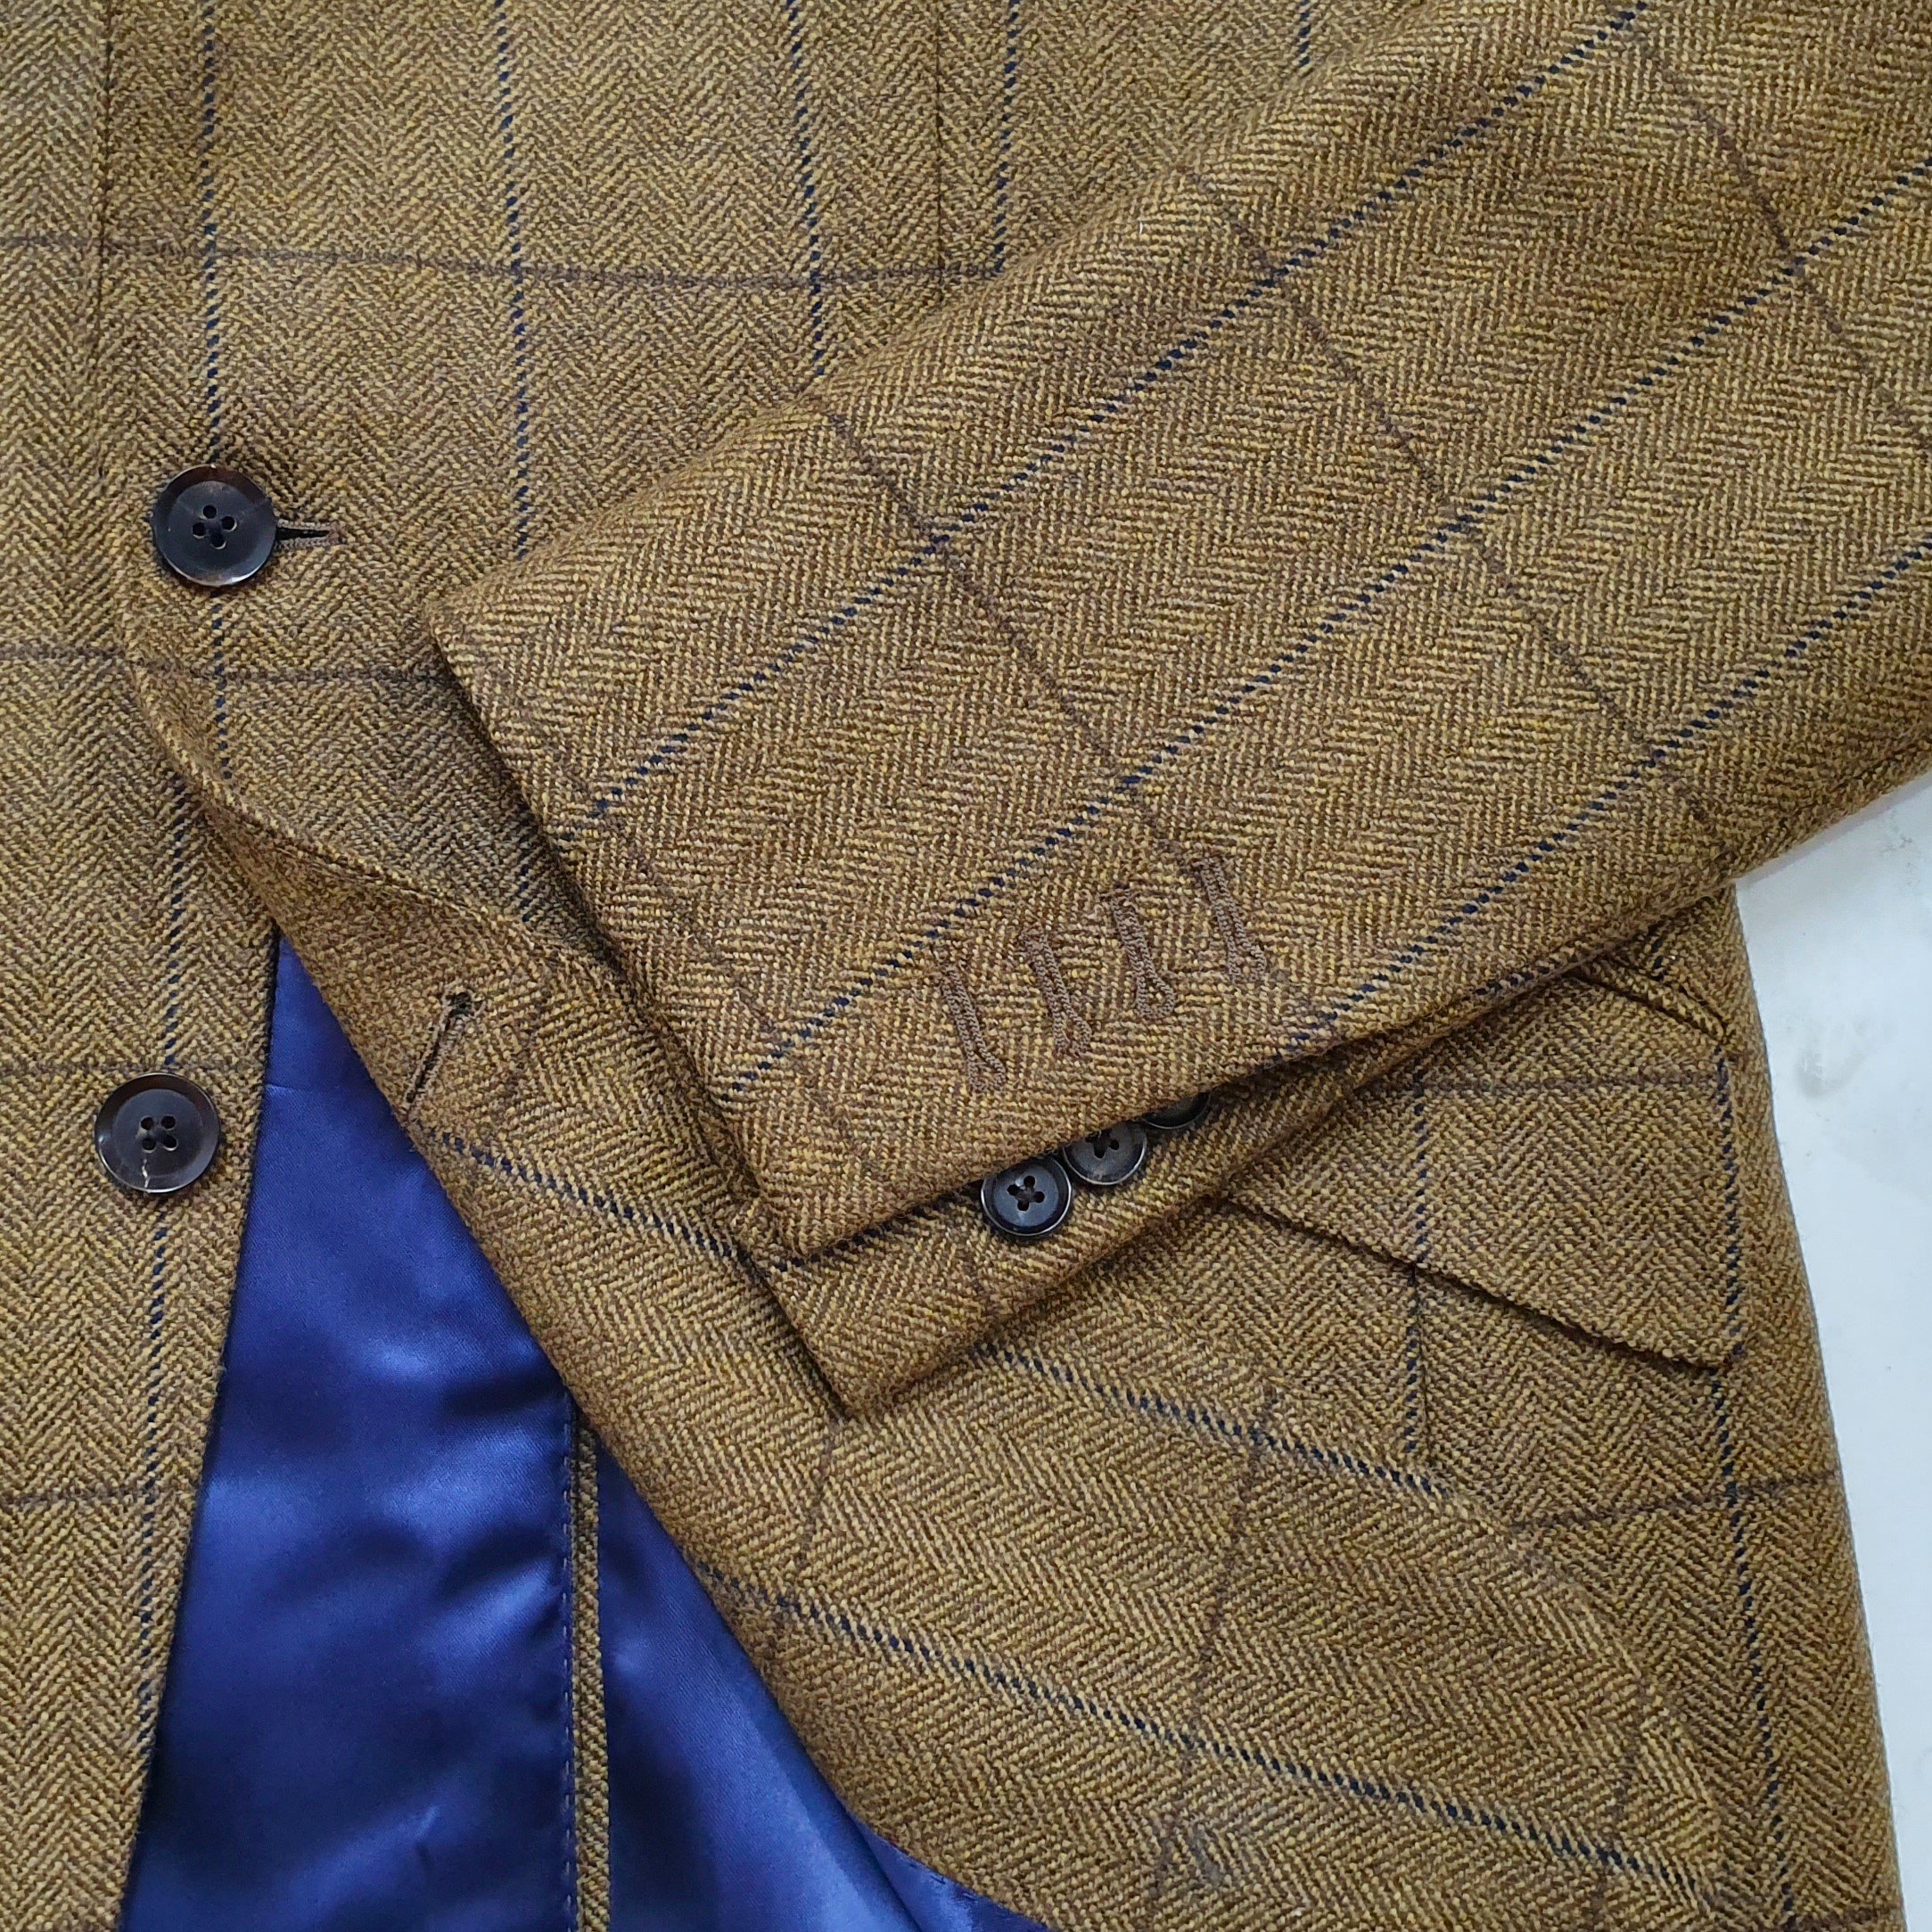 2 Piece suit in porter and harding Glenroyal tweed (10).jpg